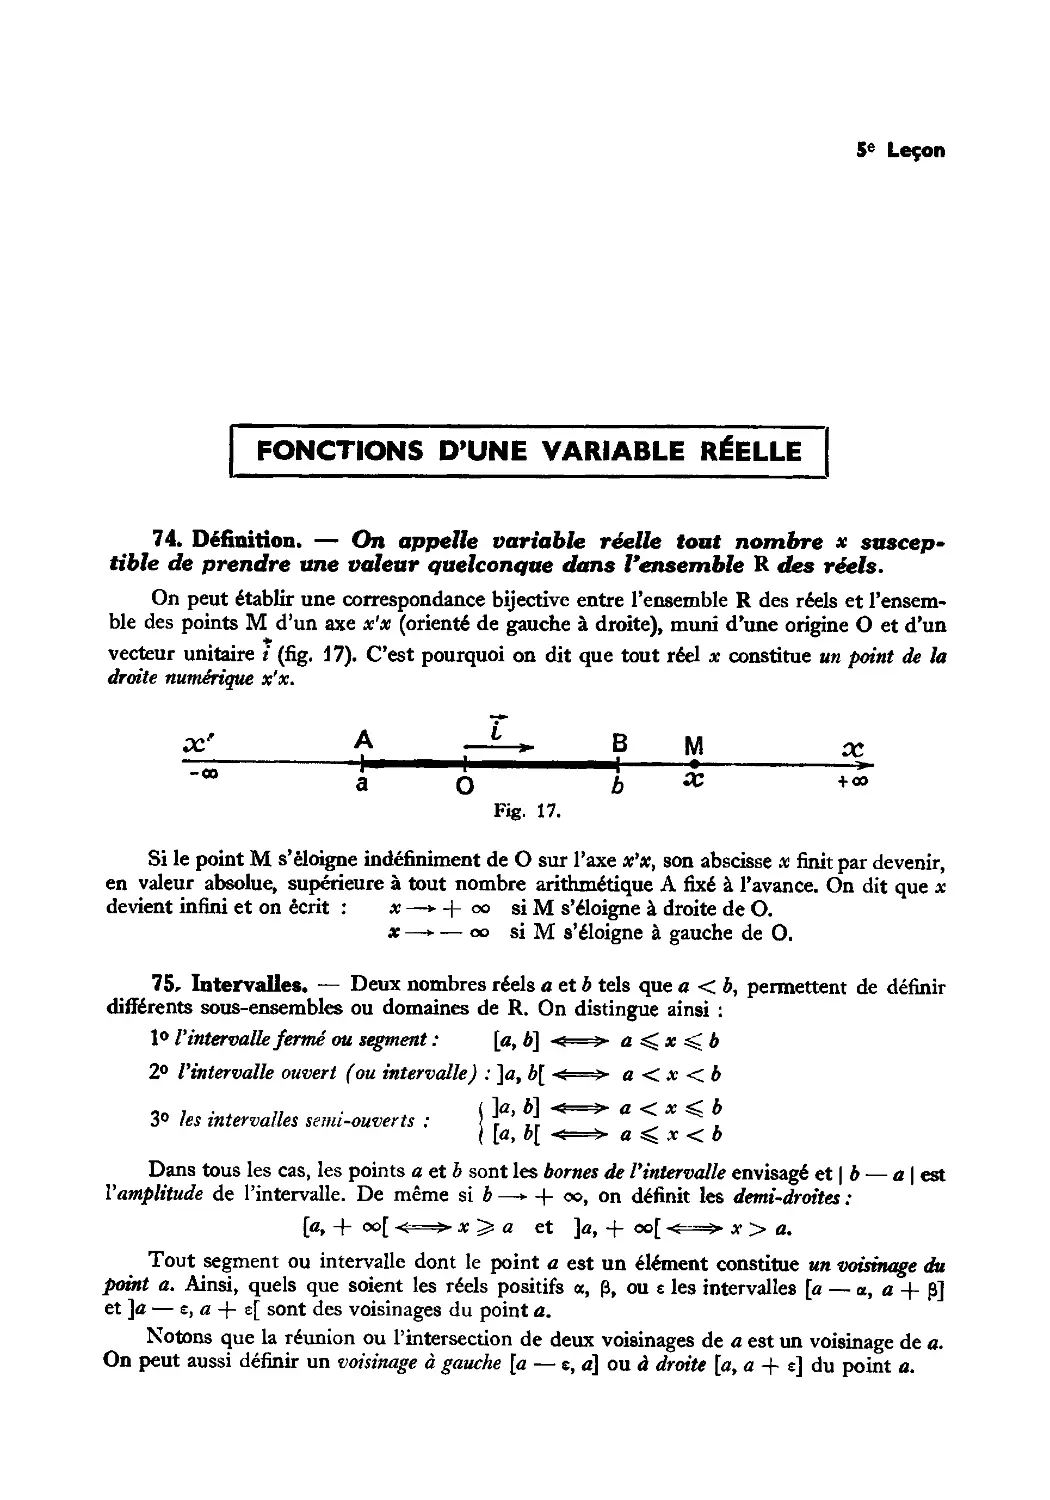 Leçon 5 — Fonctions d’une variable réelle — Limites — Coordonnées et graphes
75. Intervalles